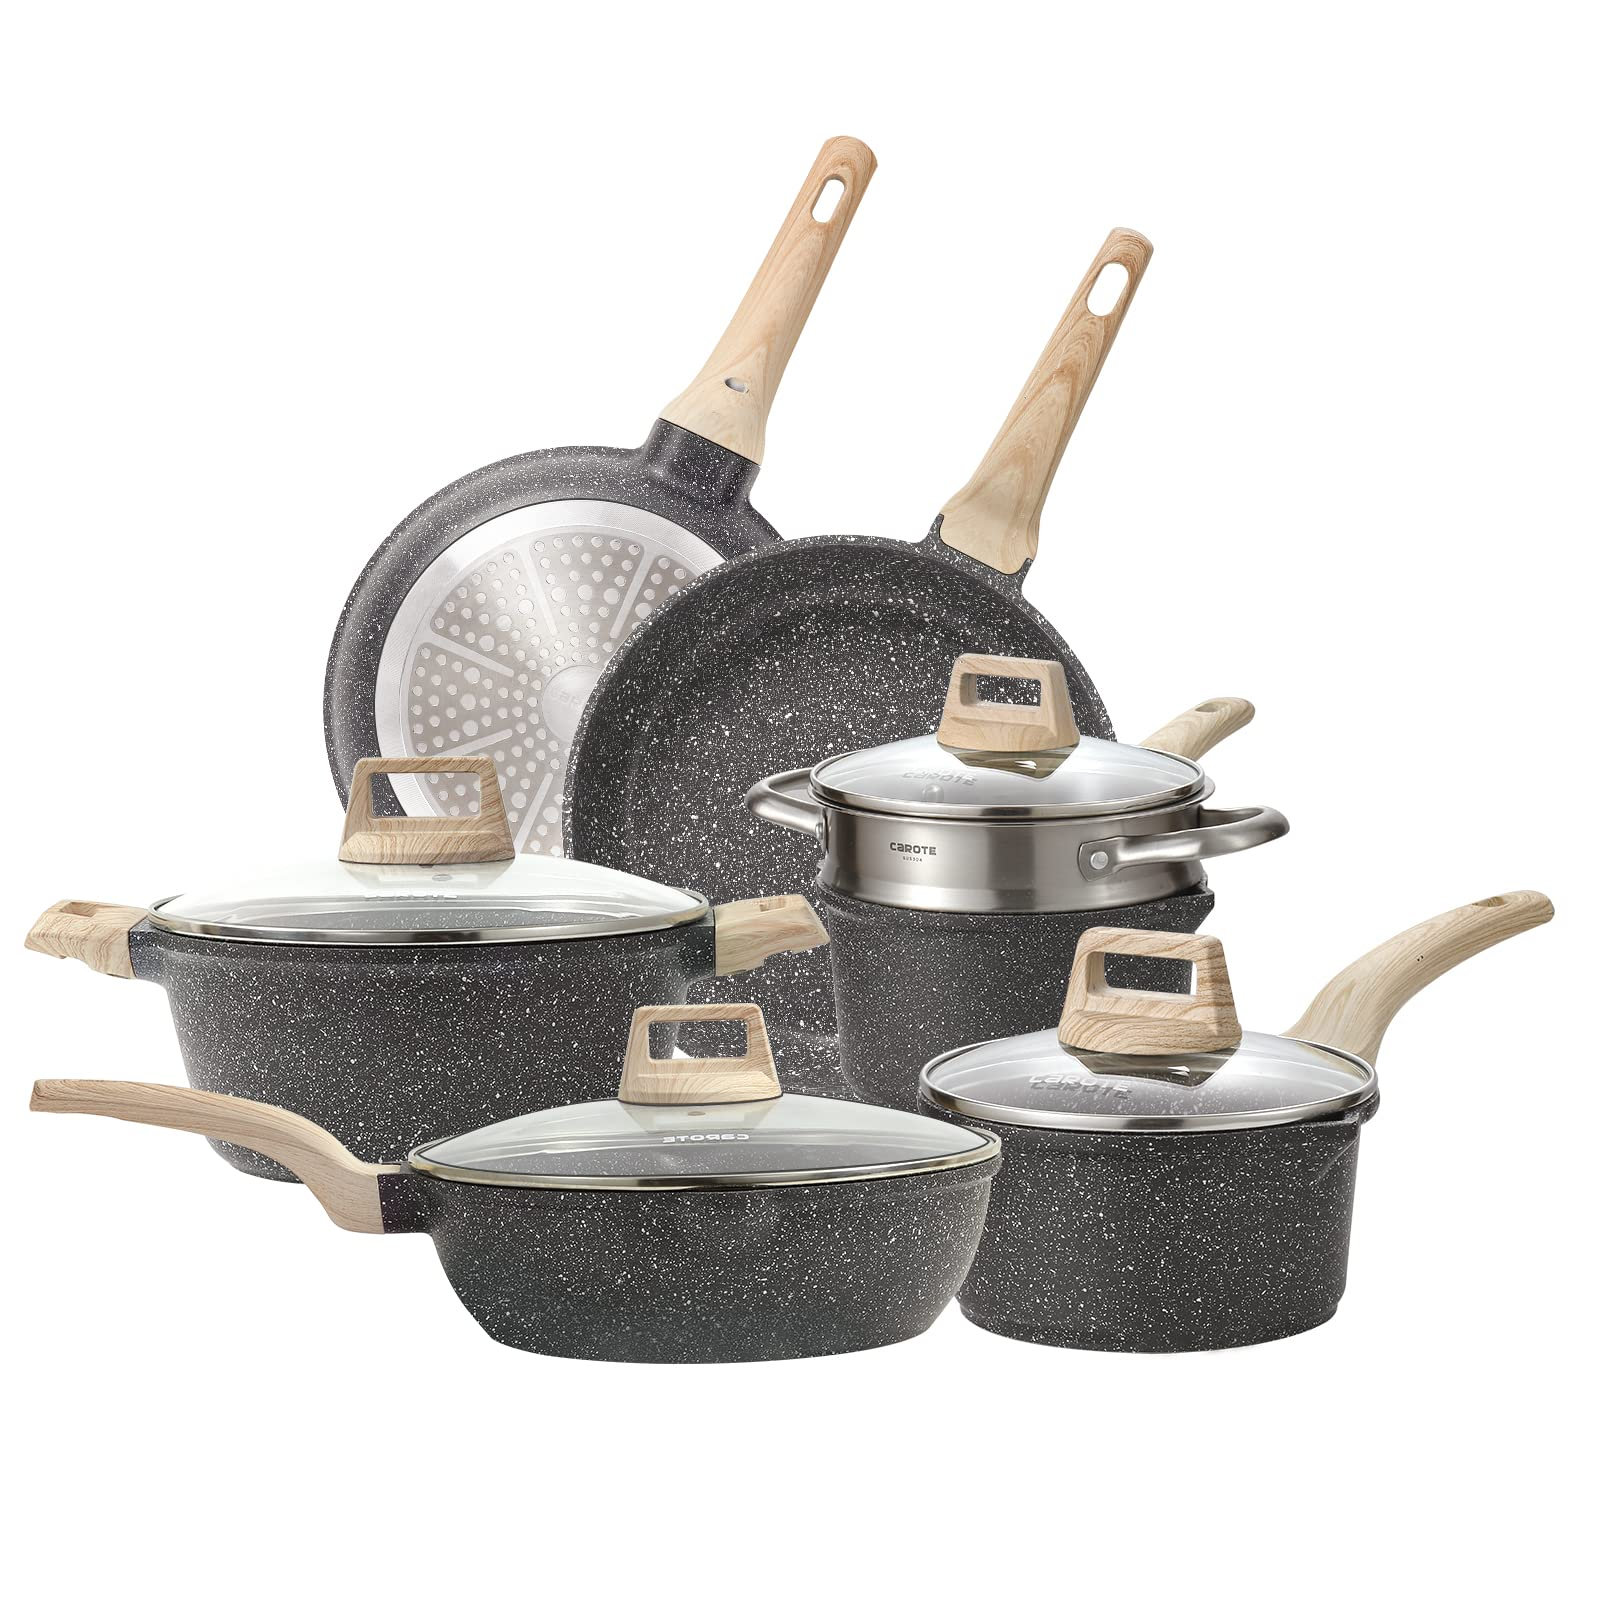 https://assets.wfcdn.com/im/93675299/compr-r85/2417/241704263/11-piece-non-stick-aluminum-cookware-set.jpg